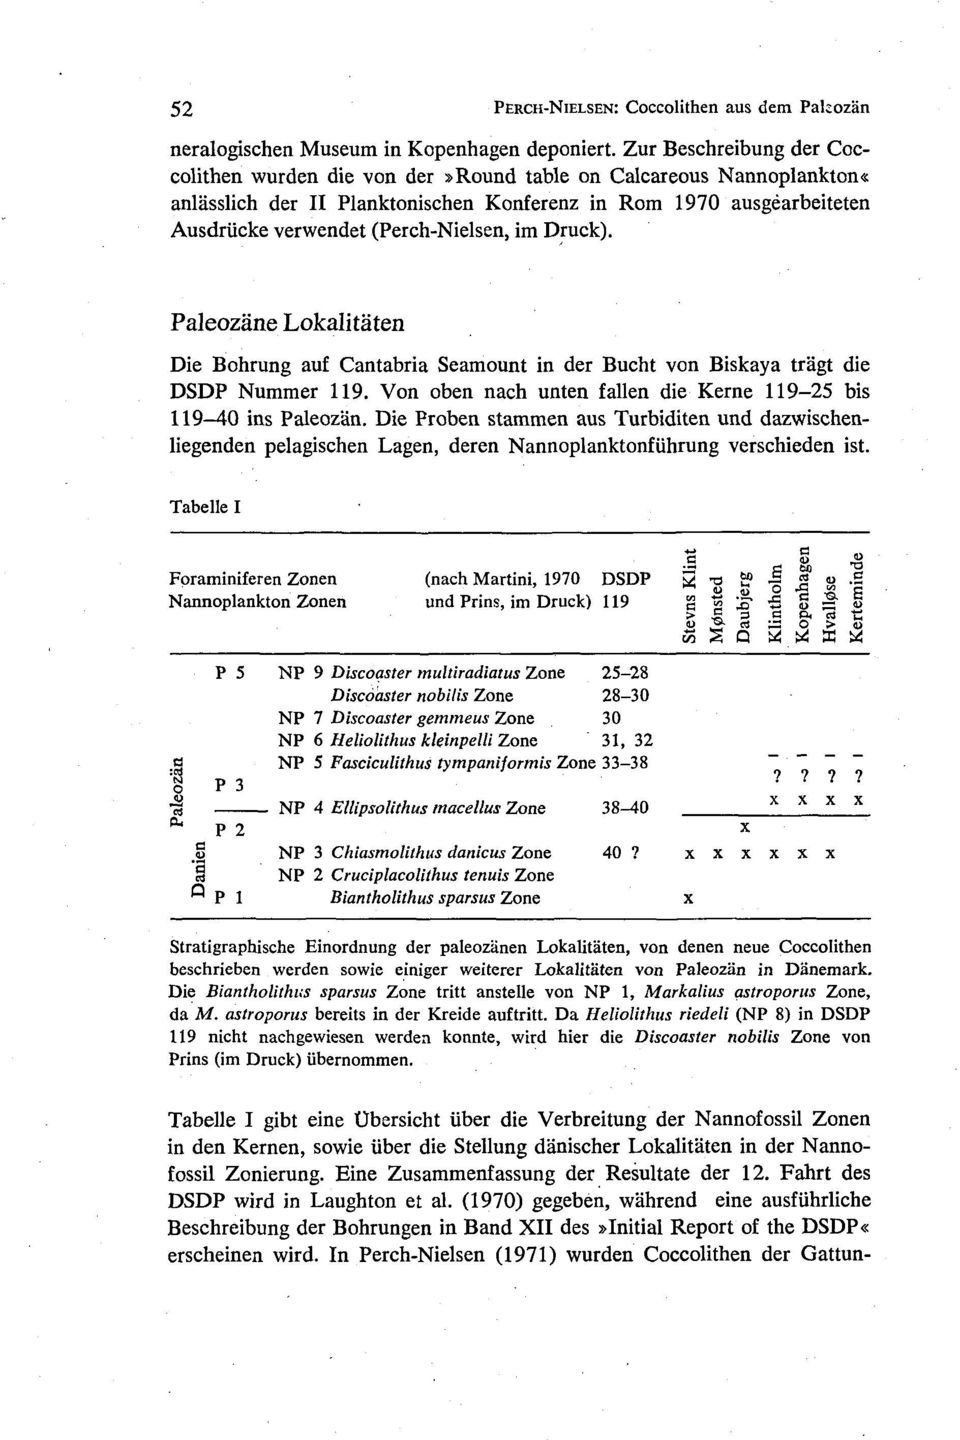 im Druck). Paleozane Lokalitaten Die Bohrung auf Cantabria Seamount in der Bucht von Biskaya tragt die DSDP Nummer 119. Von oben nach unten fallen die Kerne 119-25 bis 119-40 ins Paleozan.